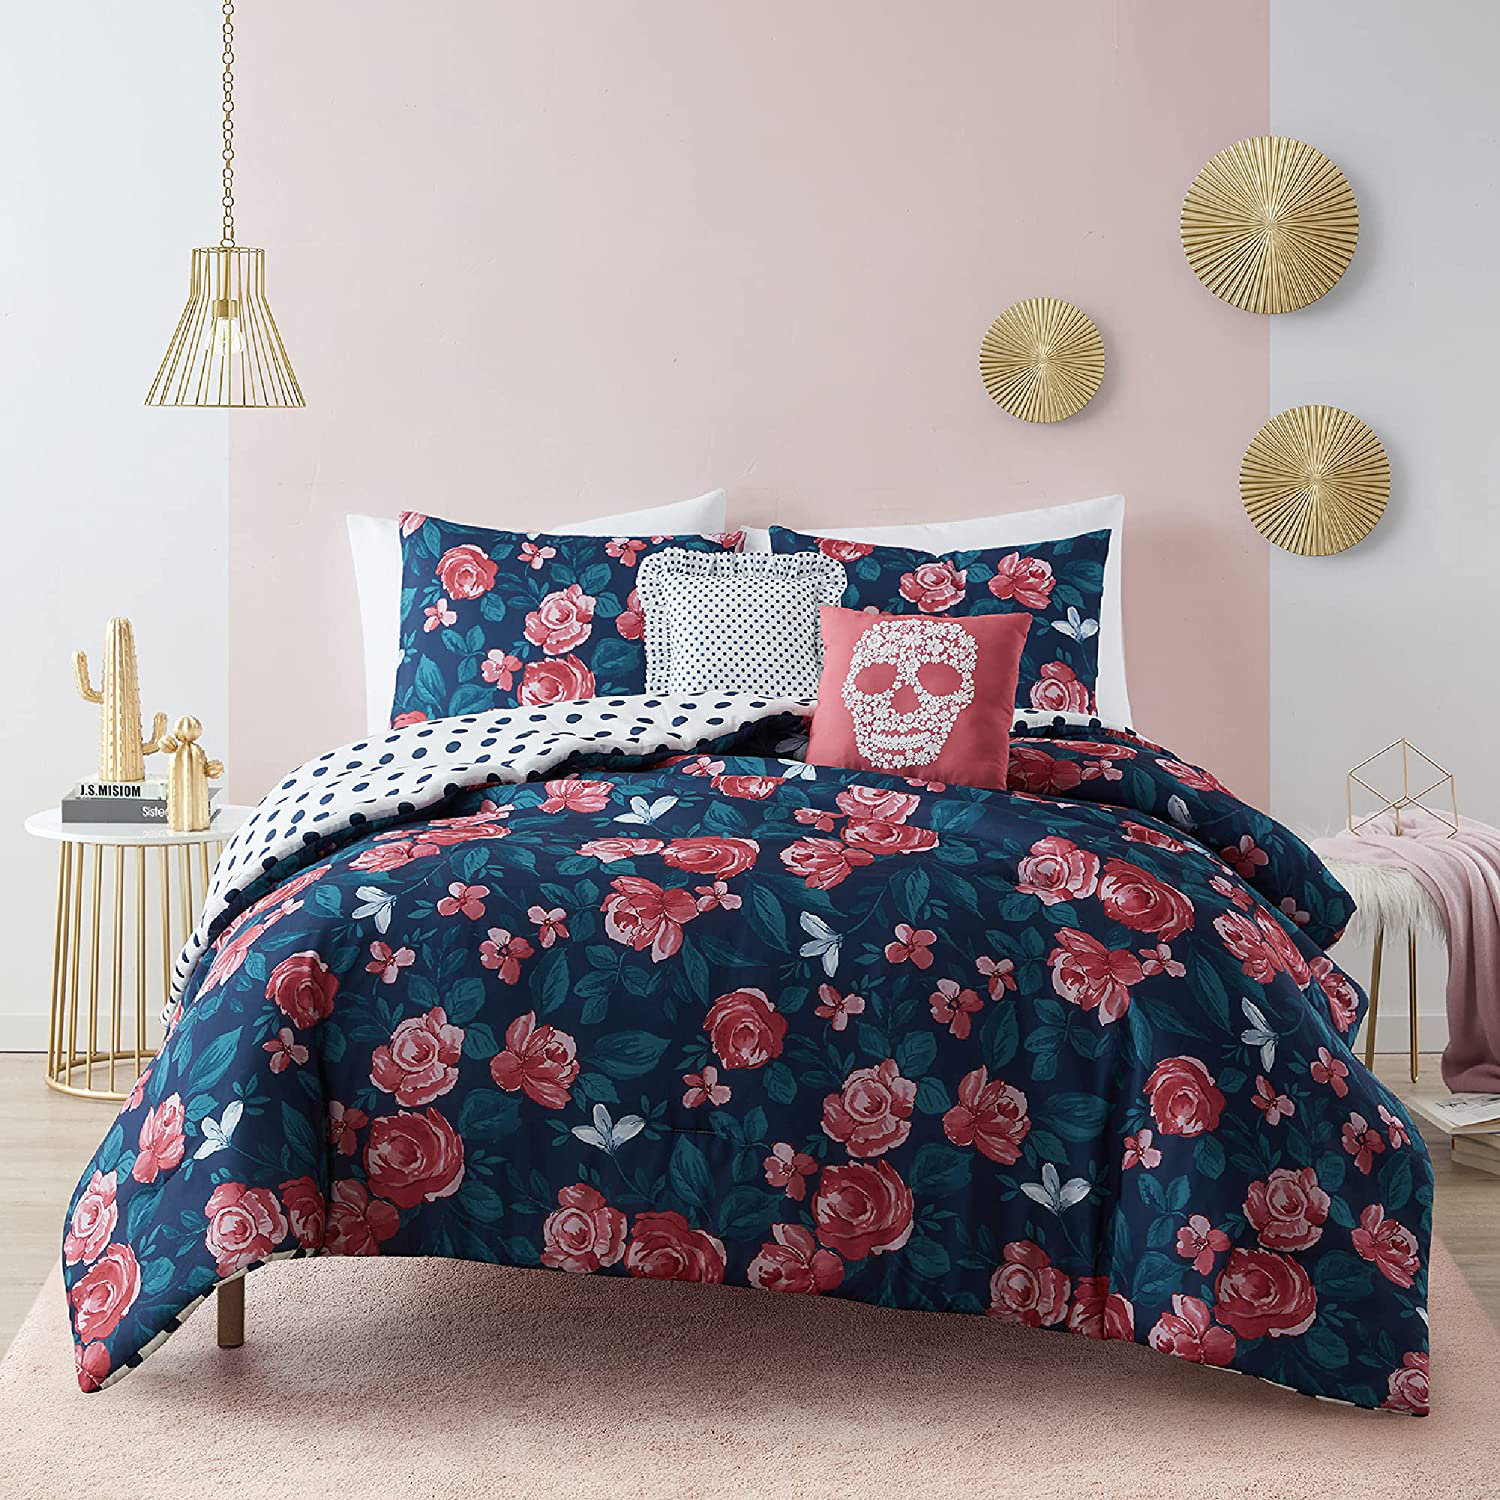 https://assets.wfcdn.com/im/17383884/compr-r85/2122/212229486/mudd-5-piece-reversible-comforter-set-1-quilt-2-pillows-2-shams-fullqueen-microfiber-comforter-set-polka-dot-floral.jpg